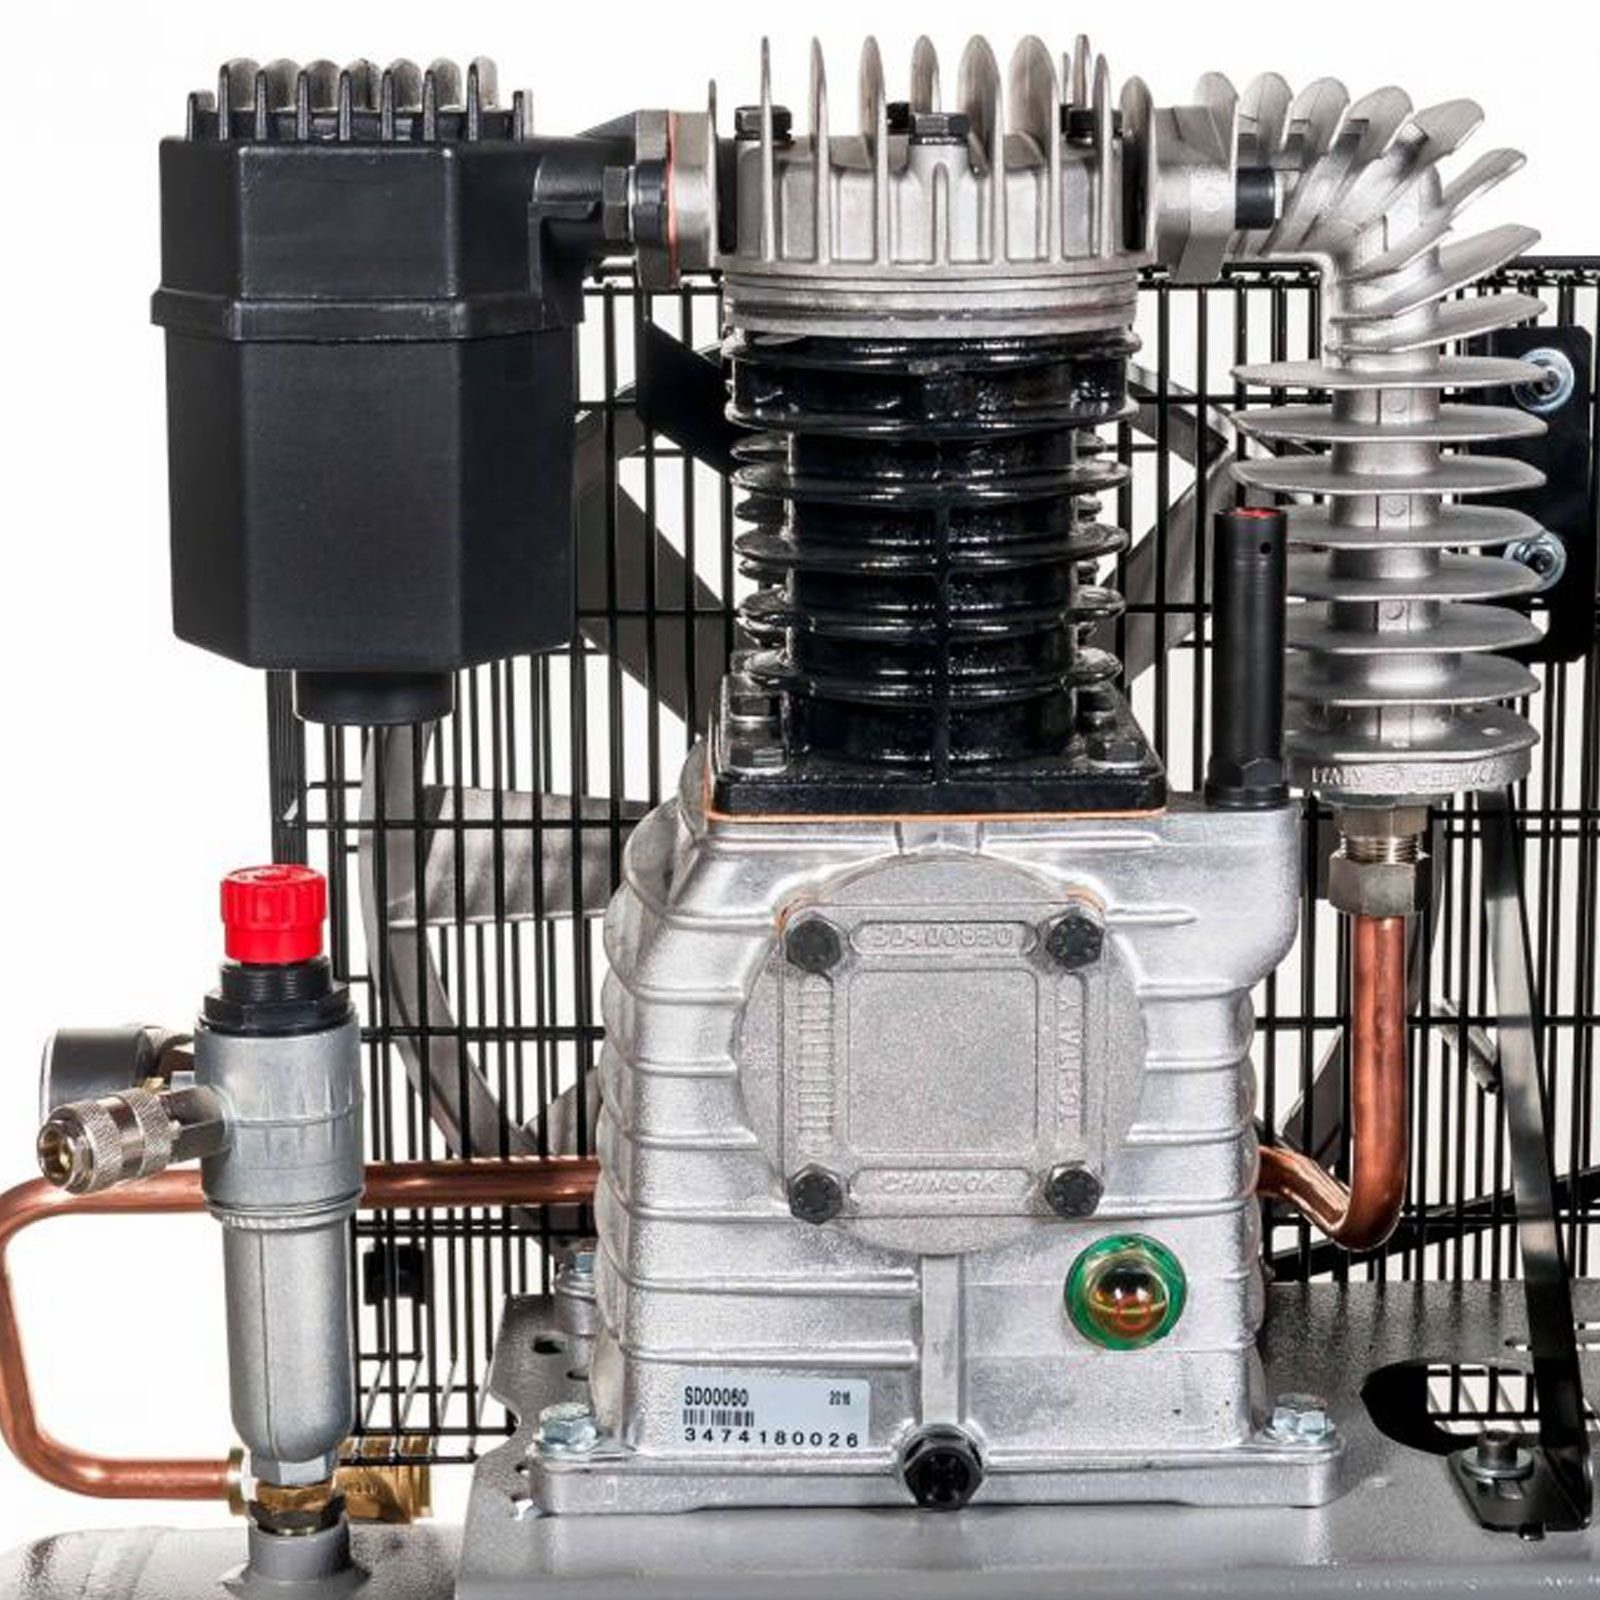 Airpress Kompressor Druckluft- 3,0 10 HL Typ max. Kompressor 1 Stück PS 100 100 bar 360566, Liter 425-100 bar, 10 l